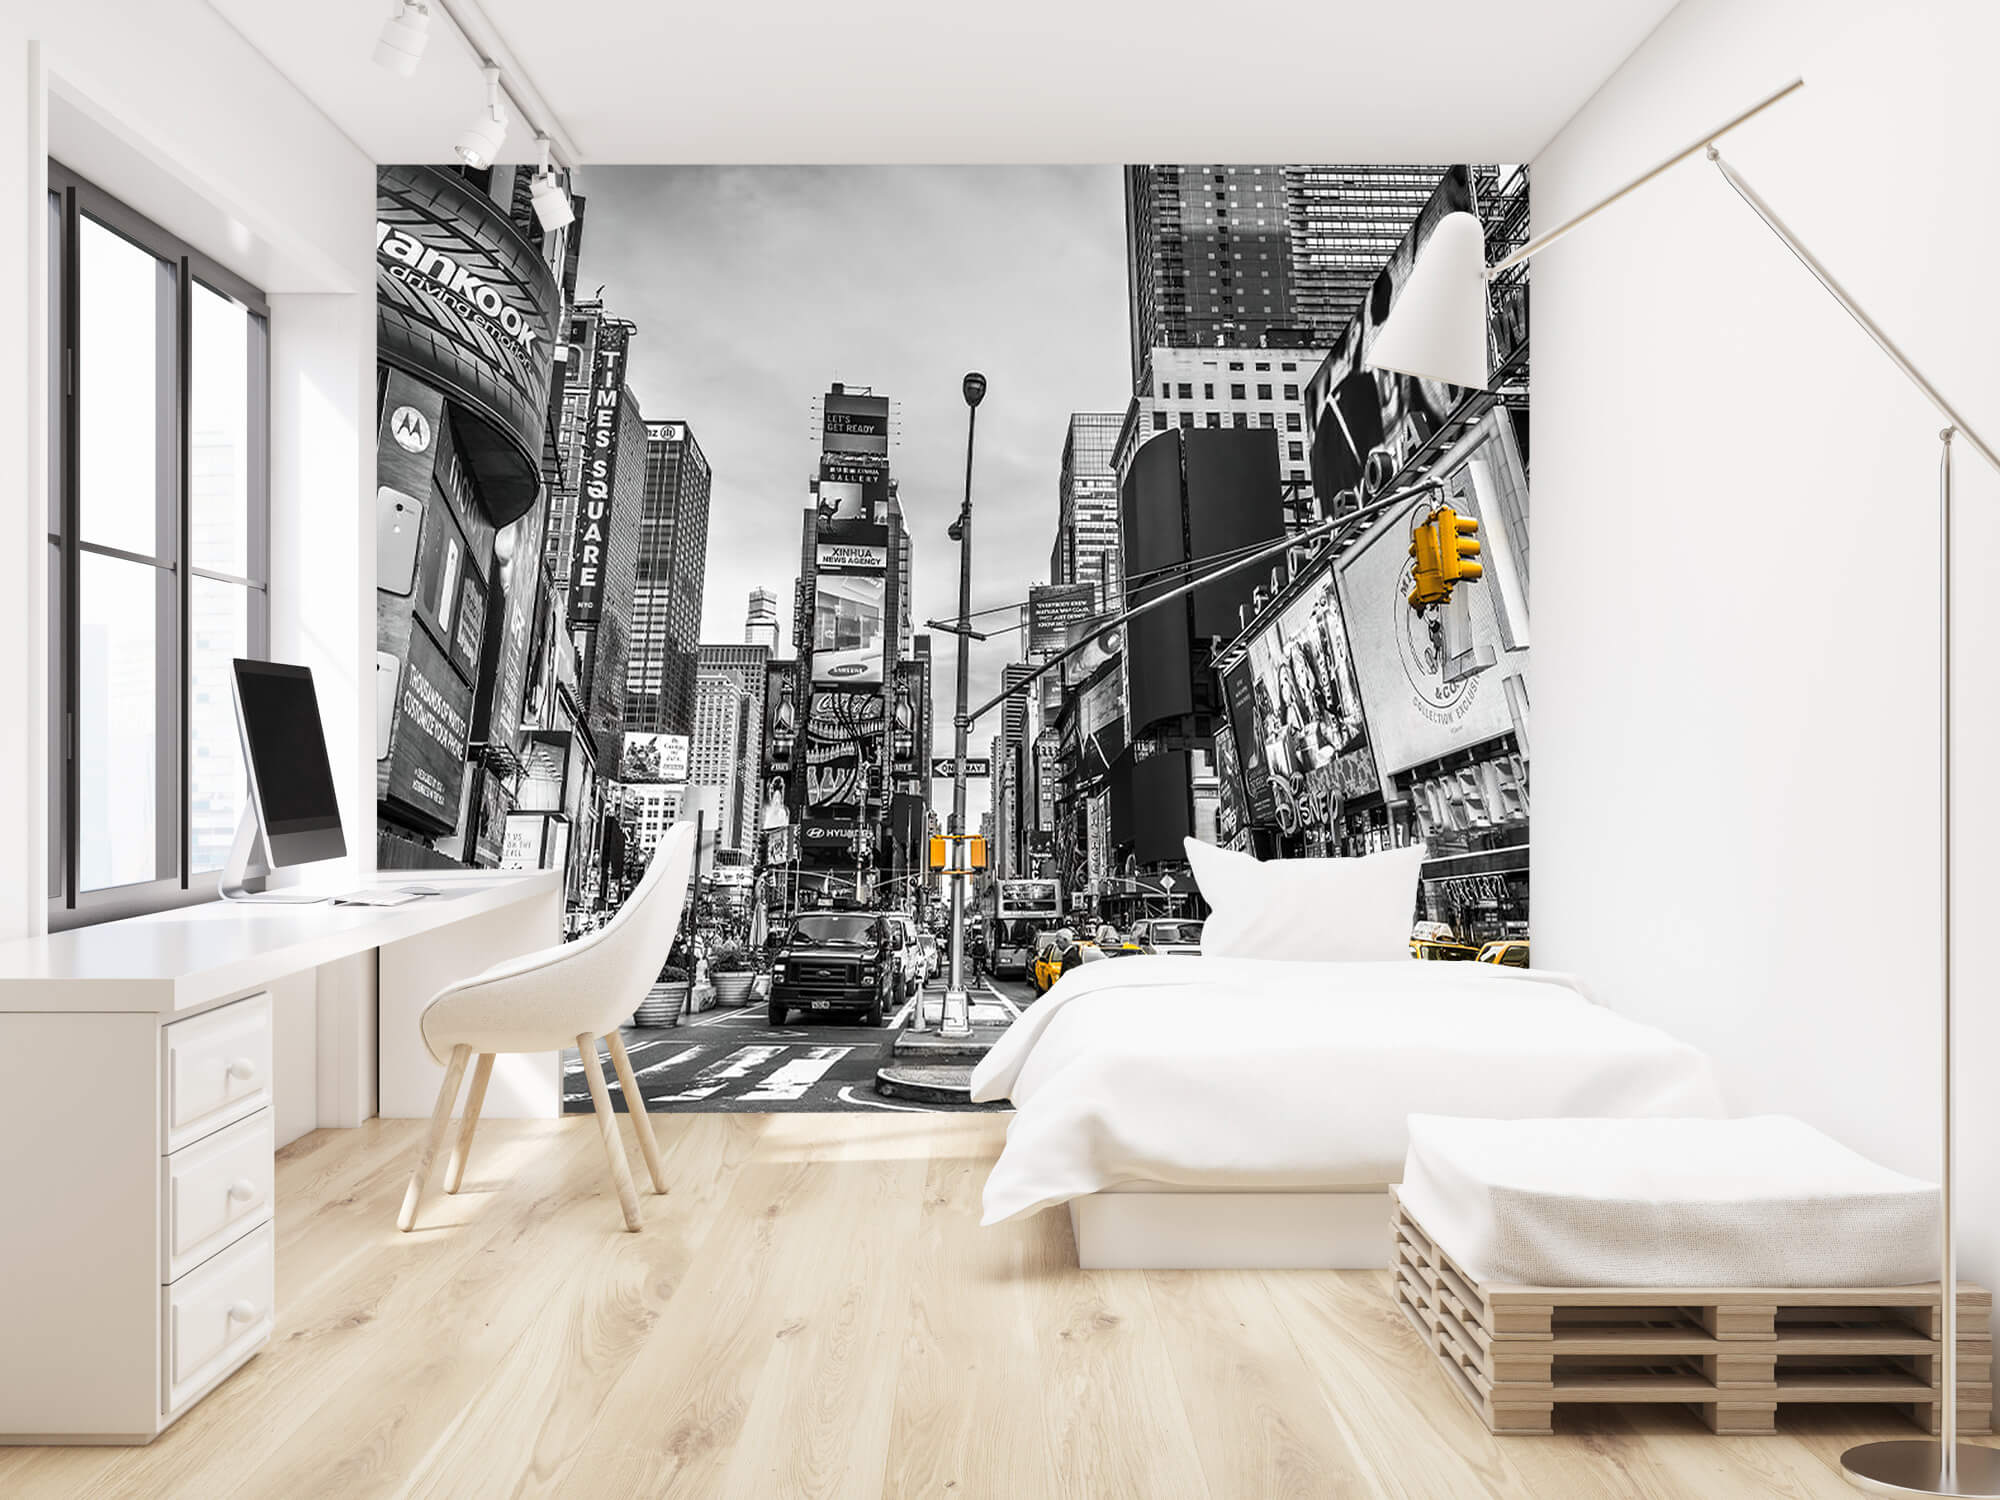  Papel pintado con Broadway Times Square - Habitación de adolescentes 17